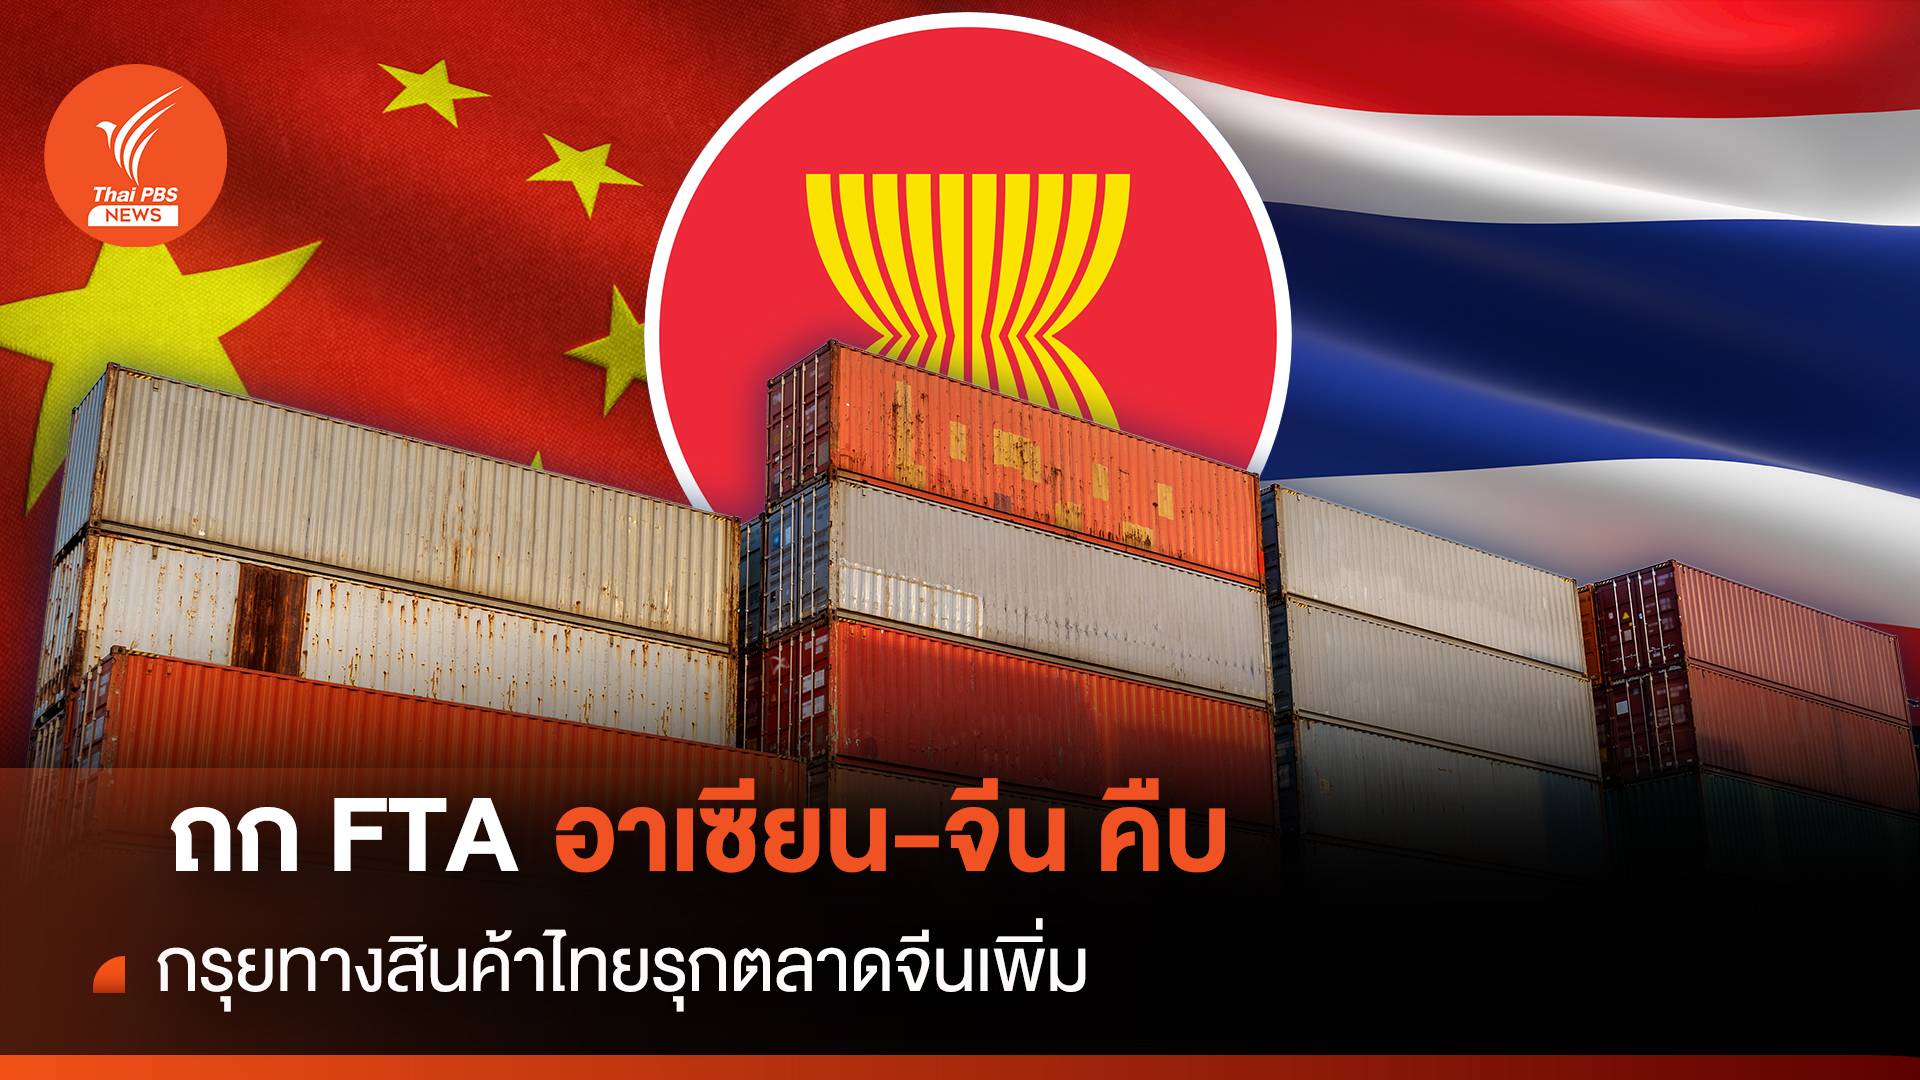 ถก FTA อาเซียน-จีน คืบ กรุยทางสินค้าไทยรุกตลาดจีนเพิ่ม